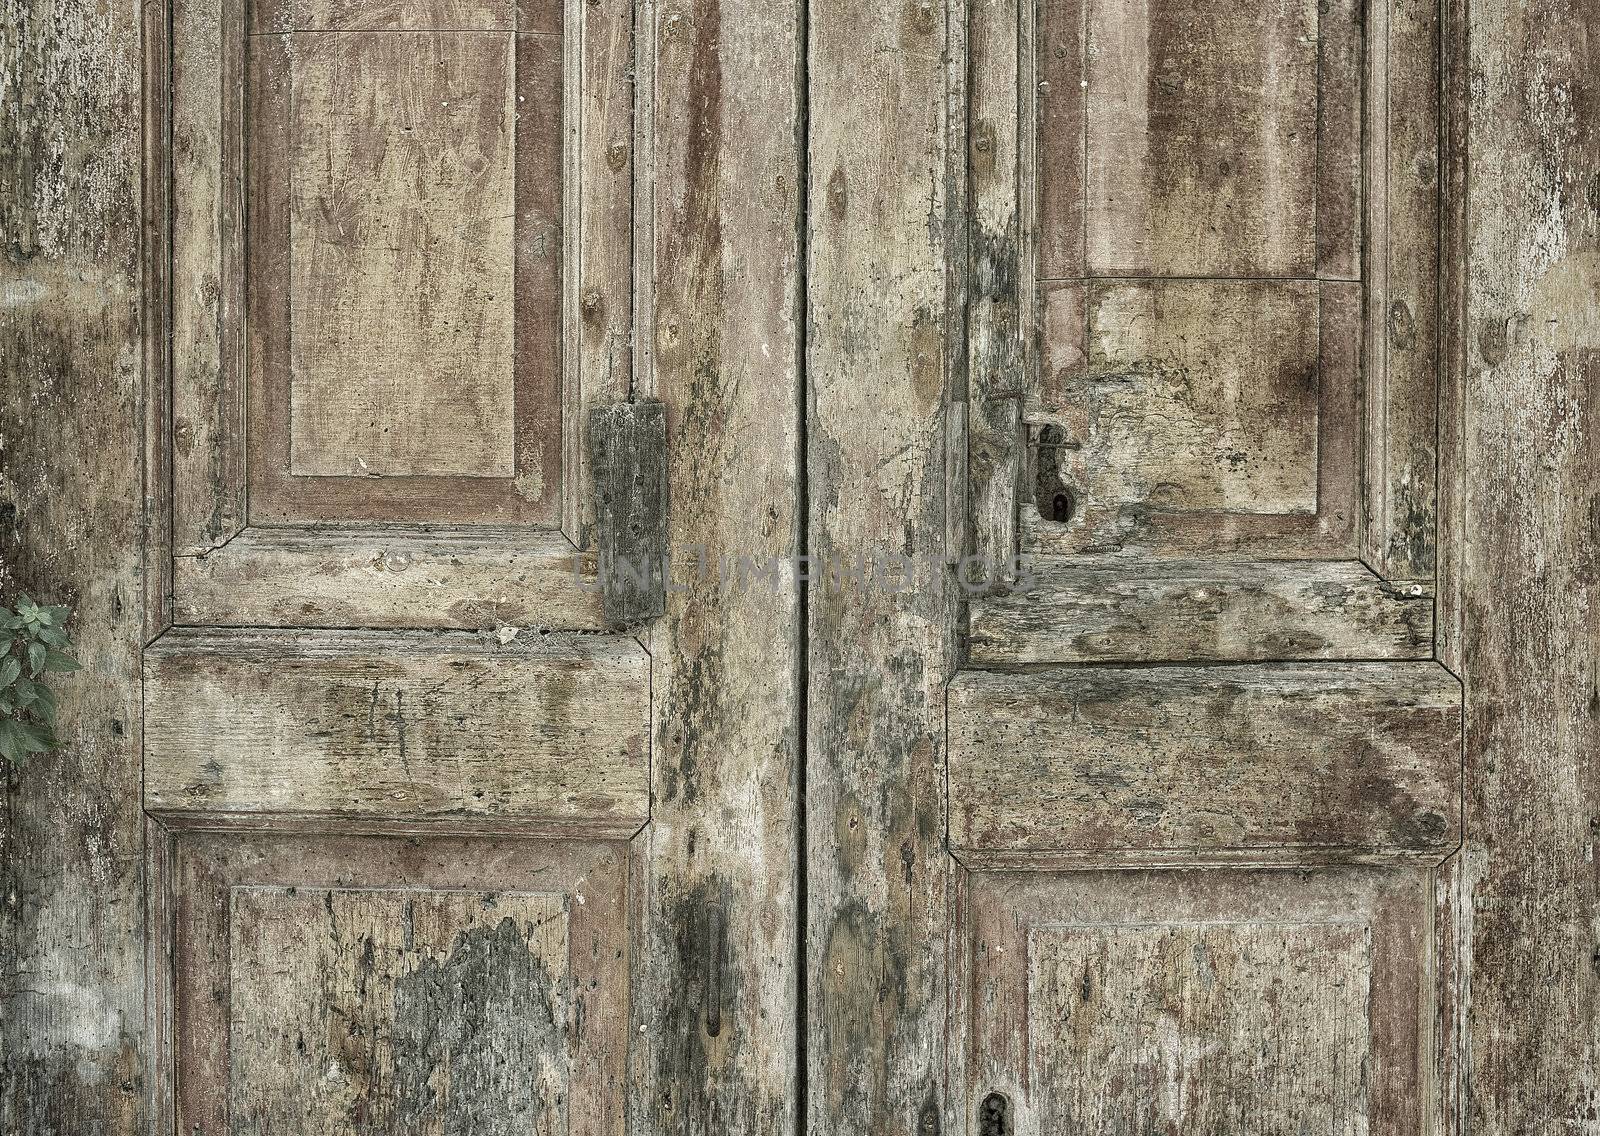 Old Italian door by ABCDK